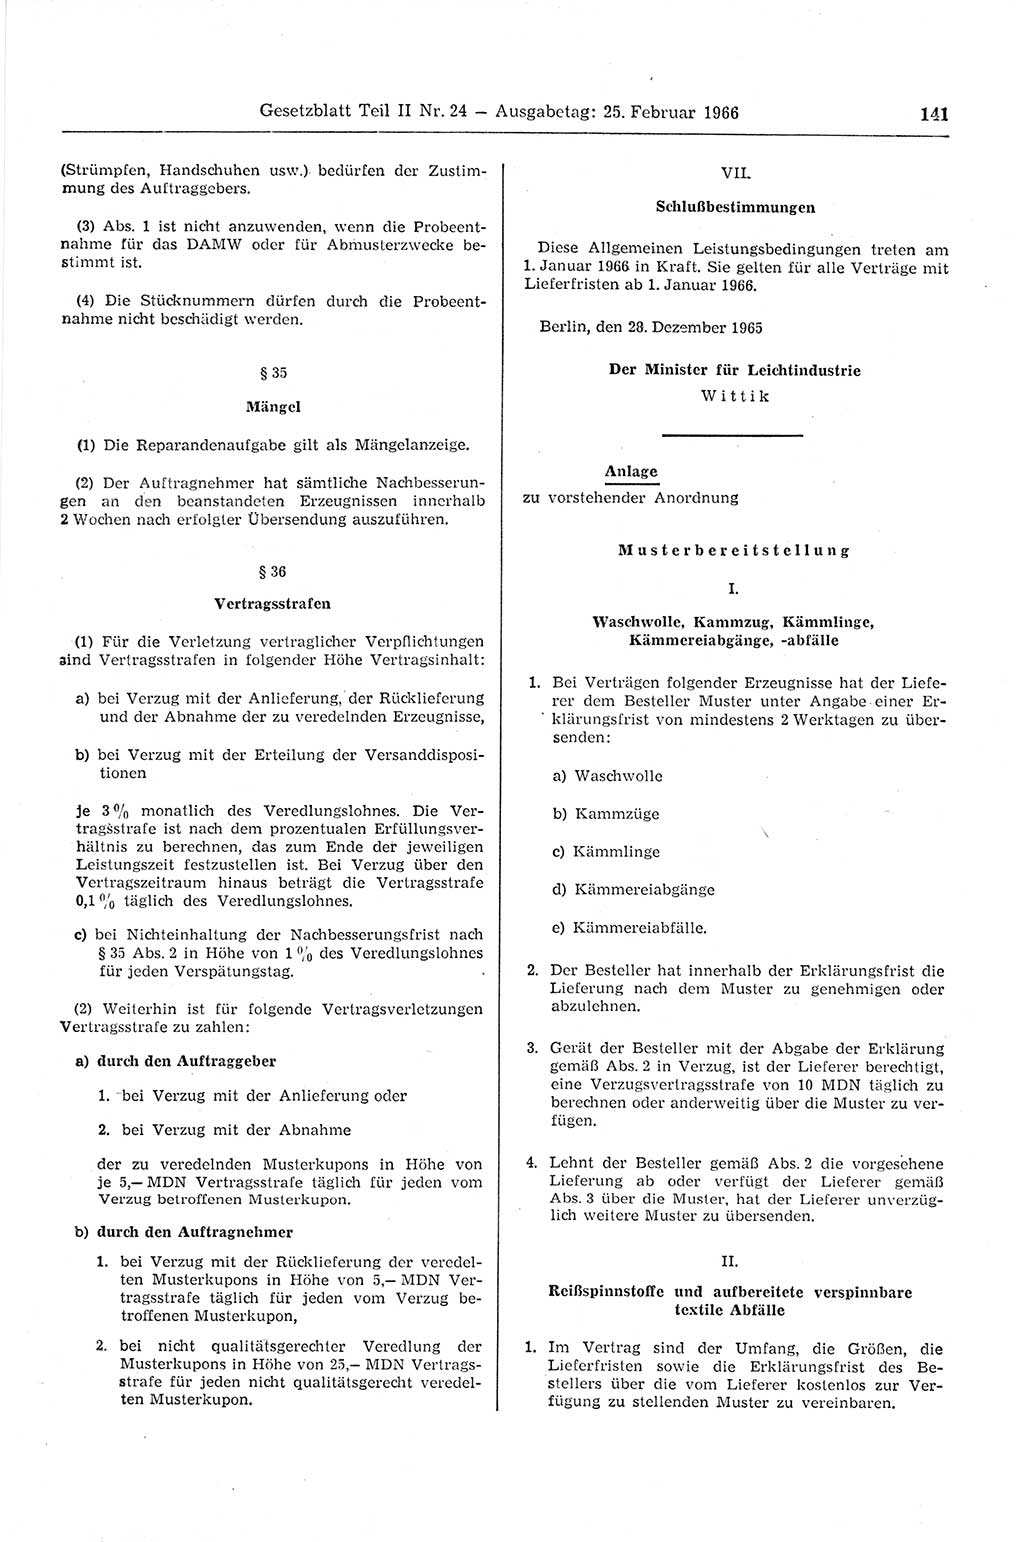 Gesetzblatt (GBl.) der Deutschen Demokratischen Republik (DDR) Teil ⅠⅠ 1966, Seite 141 (GBl. DDR ⅠⅠ 1966, S. 141)